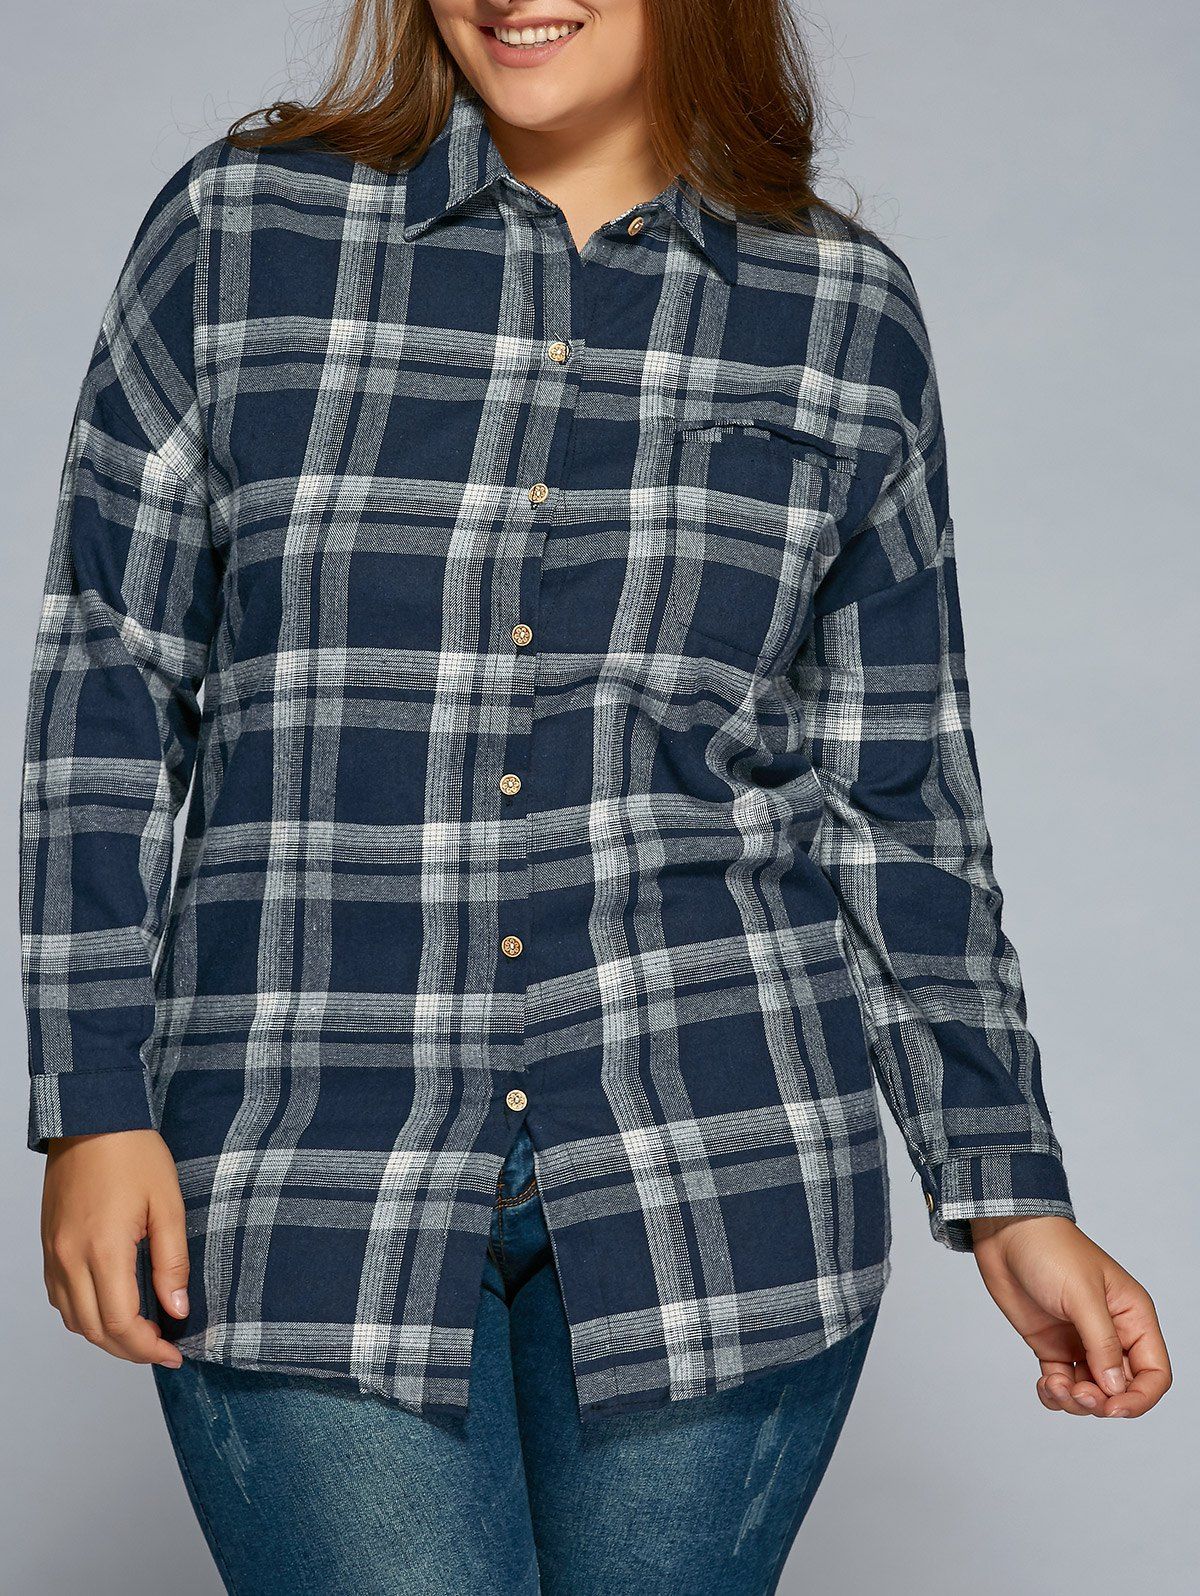 Plus Size Long Sleeve Plaid Flannel Shirt Cadetblue Xl In Plus Size Blouses